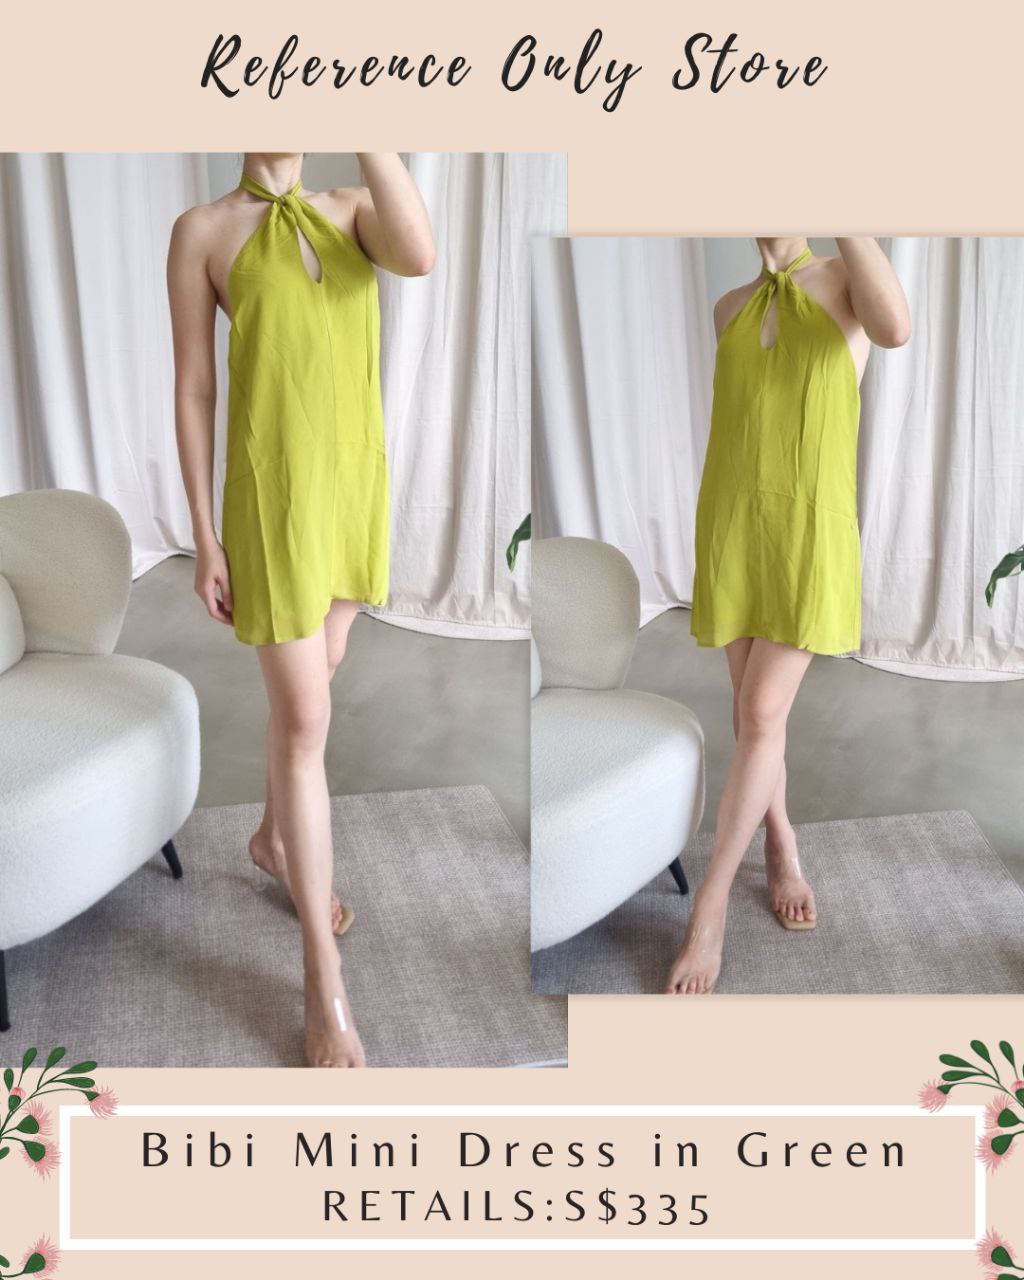 Ref Bibi Mini dress in 2 colors